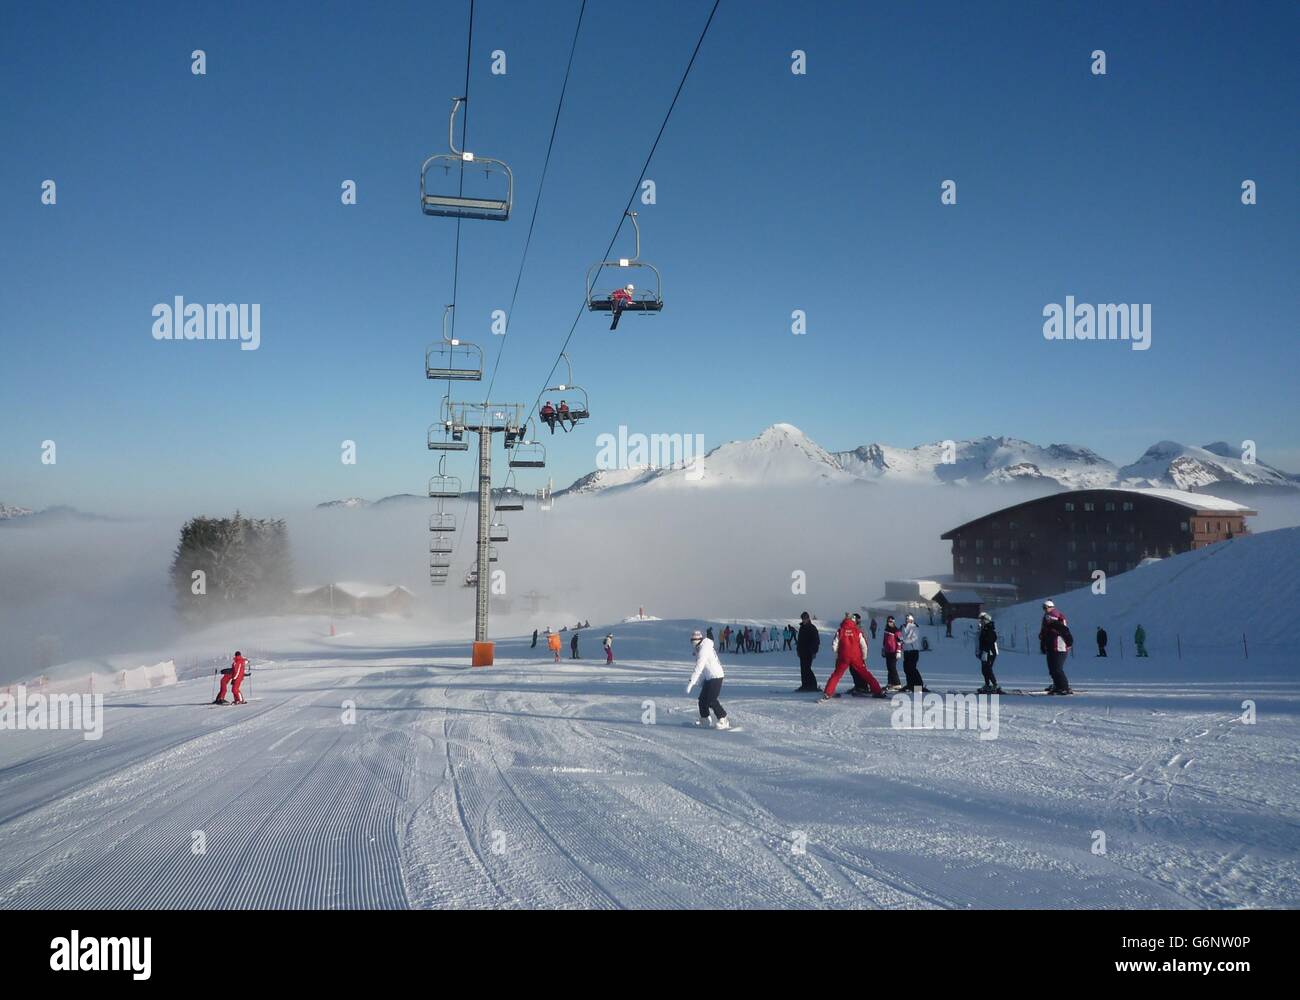 La mattina presto in pista con un basso livello di cloud e ski-lift tettuccio Foto Stock